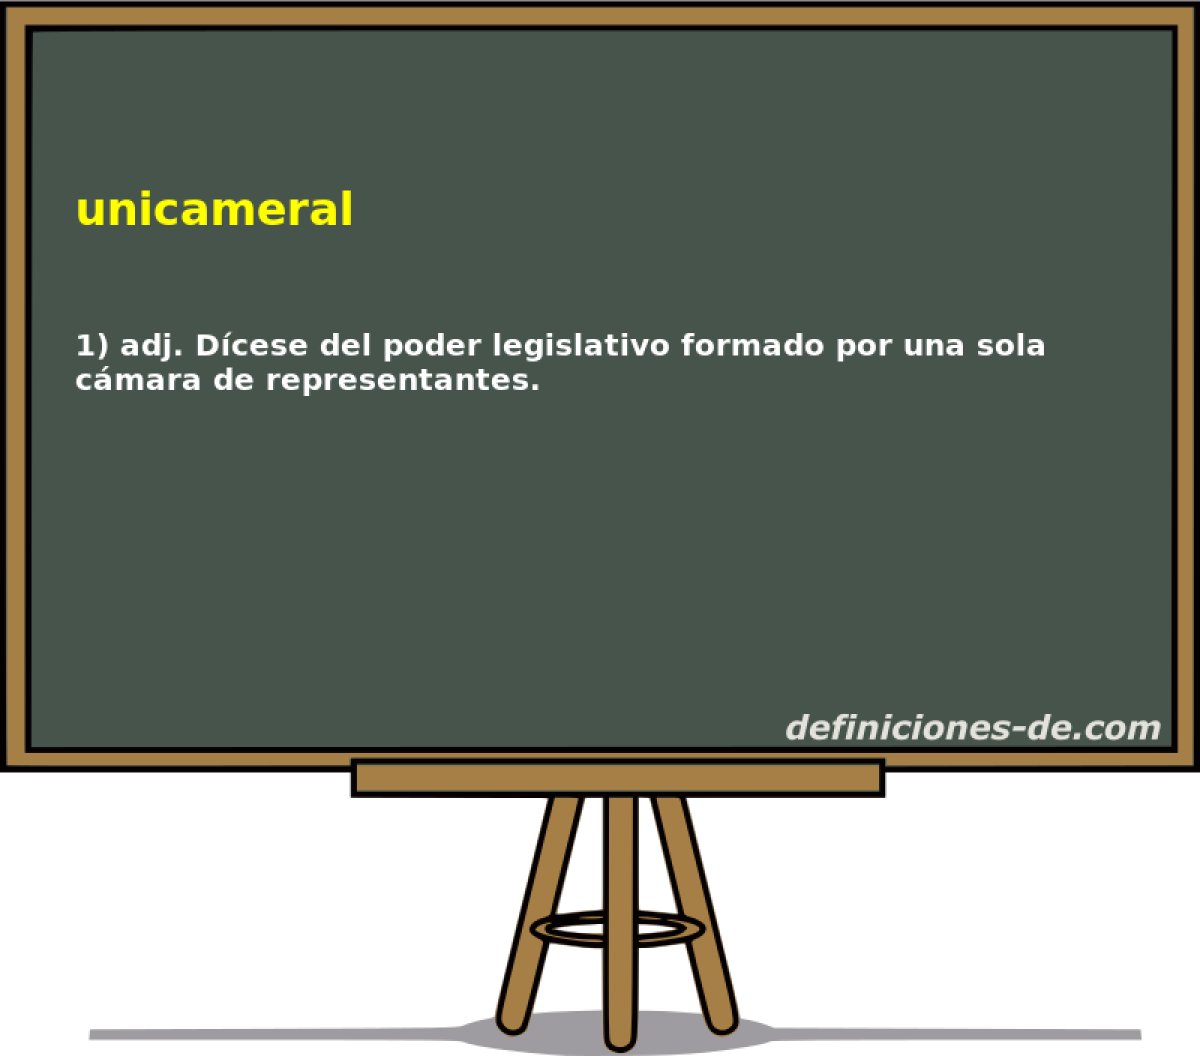 unicameral 